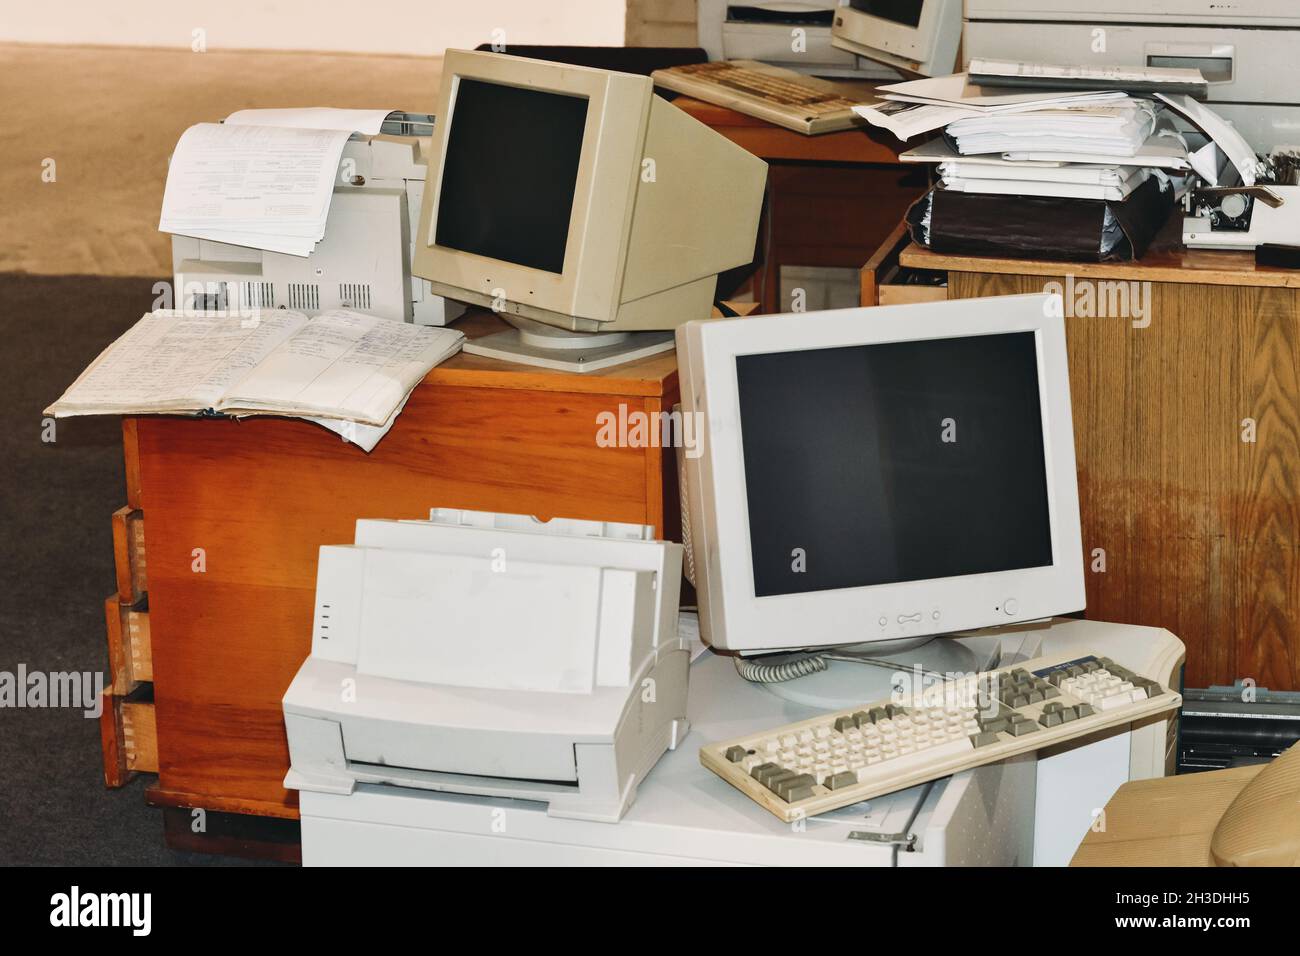 Ordenadores antiguos, impresoras, máquinas de escribir, teclados listos para la basura de la oficina. Dispositivo retro, pantallas y monitores en la mesa y el suelo Foto de stock